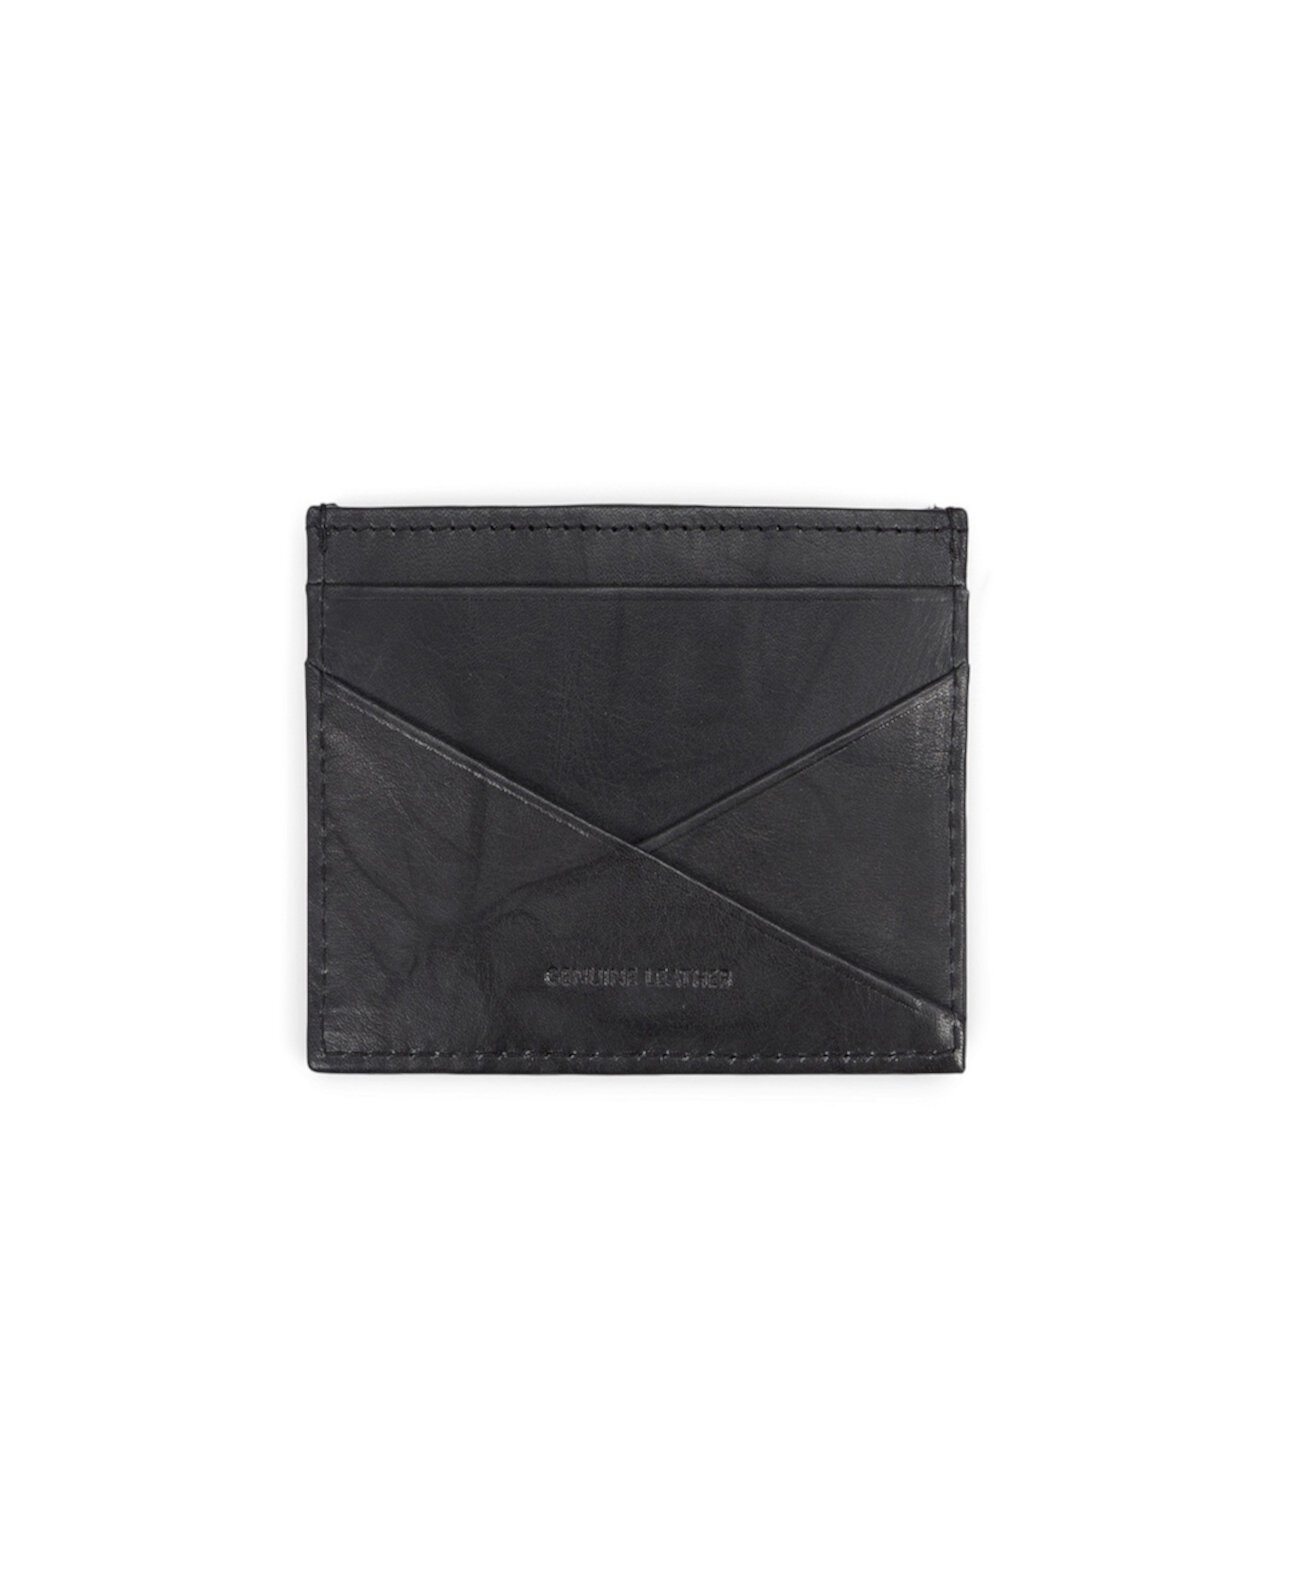 Мужской кожаный тонкий складной кошелек RFID со съемным футляром для магнитных карт Kenneth Cole